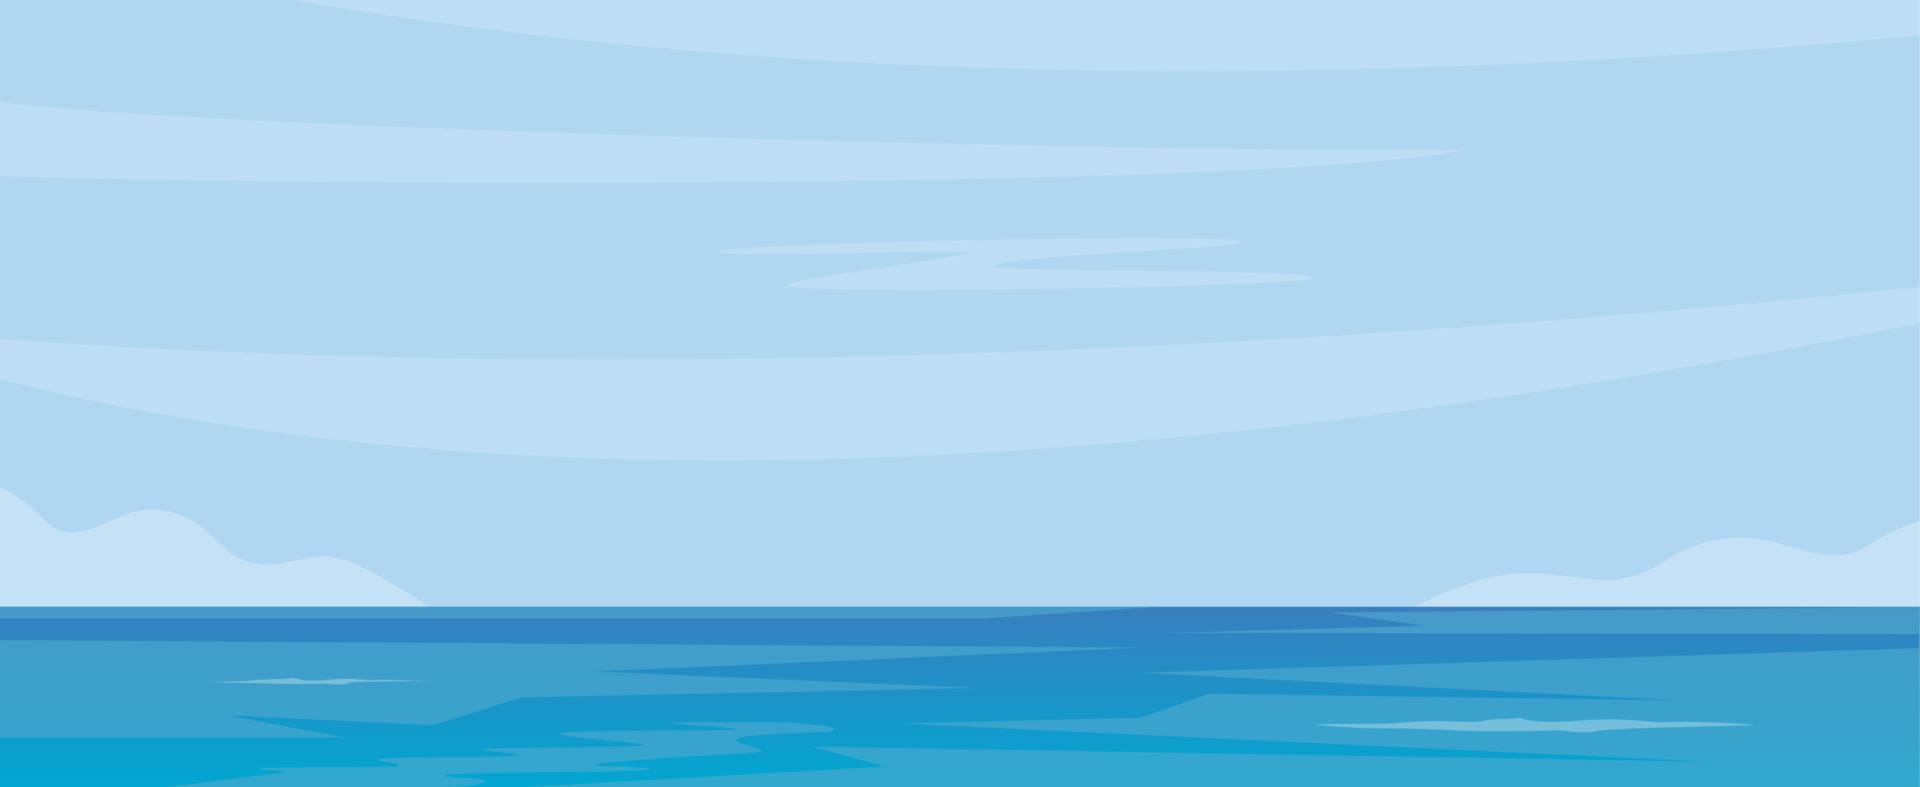 fond bleu mer et ciel. surface de la mer calme, ciel, nuages. illustration vectorielle. vecteur